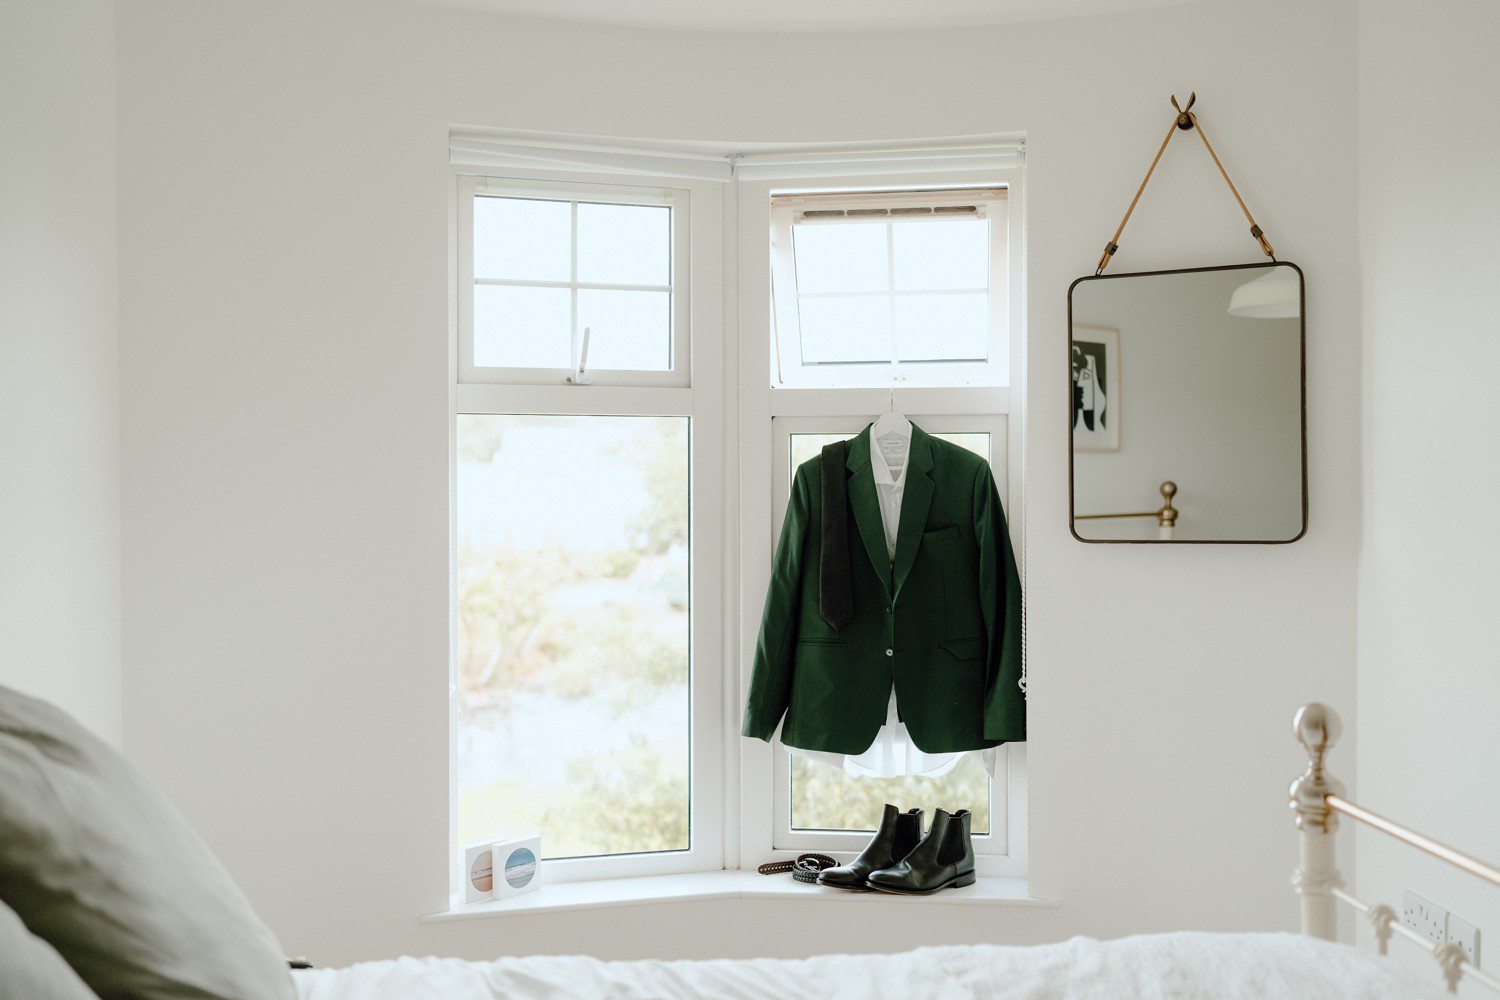 Groom green suit jacket